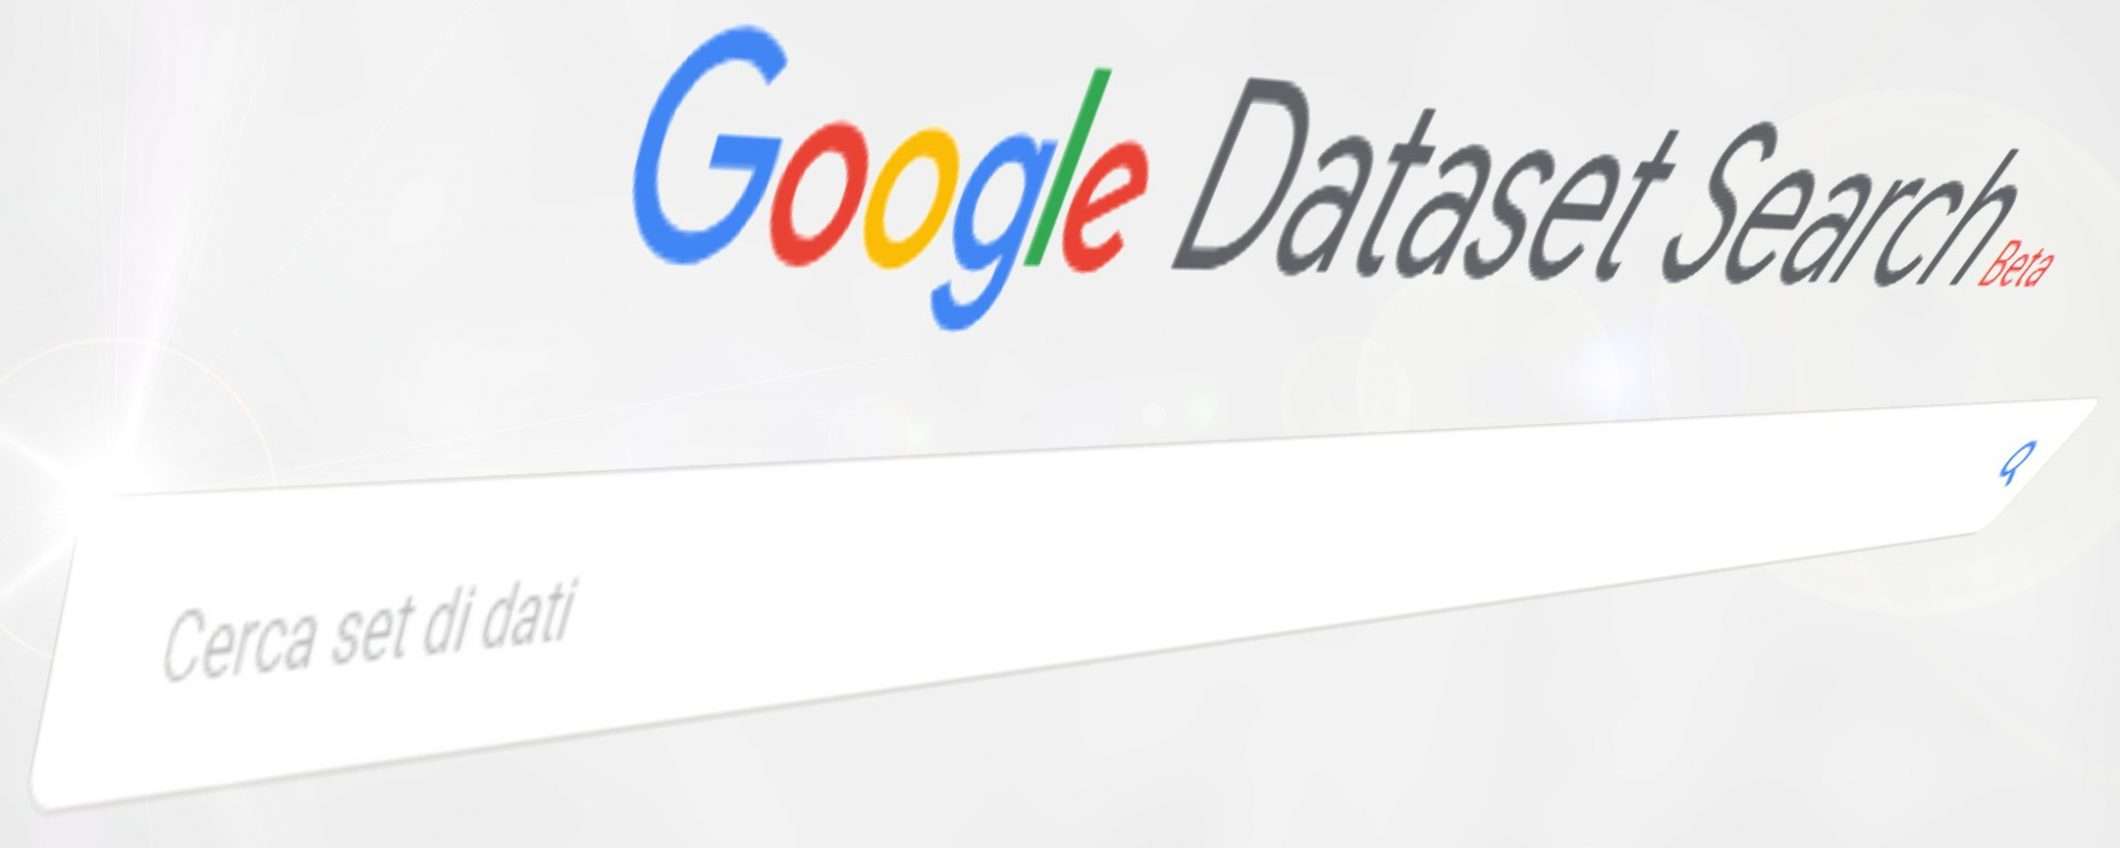 Google Dataset Search: più dati per tutti